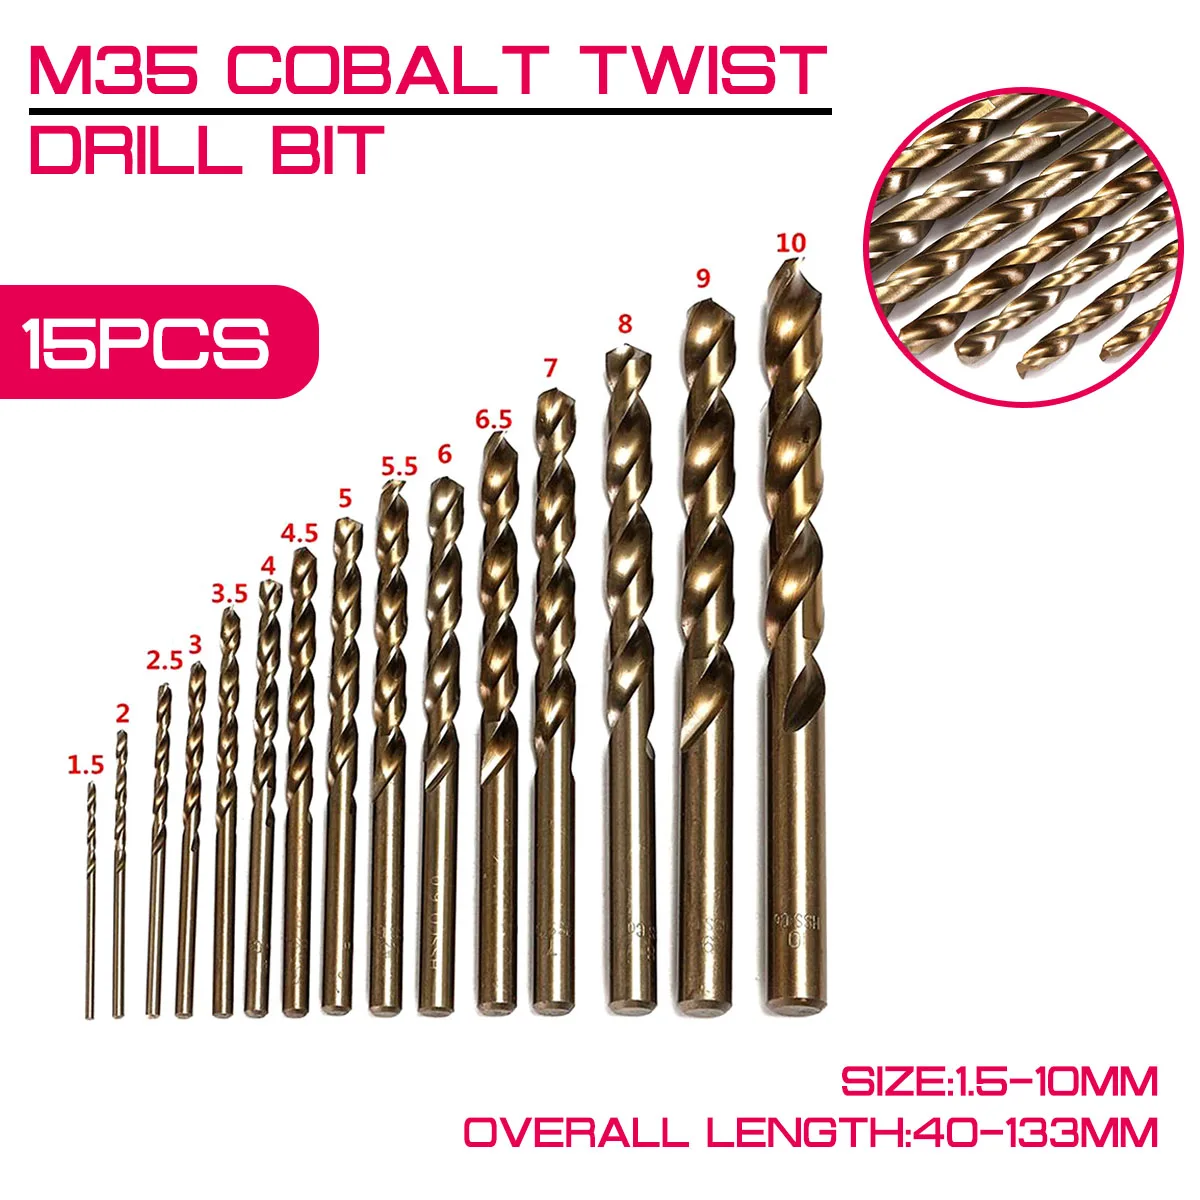 

15 шт./лот M35 кобальта спиральное сверло HSS-CO 1,5-10 мм из быстрорежущей инструментальной стали 40-133 мм длина дерево сверления металла Одежда высш...